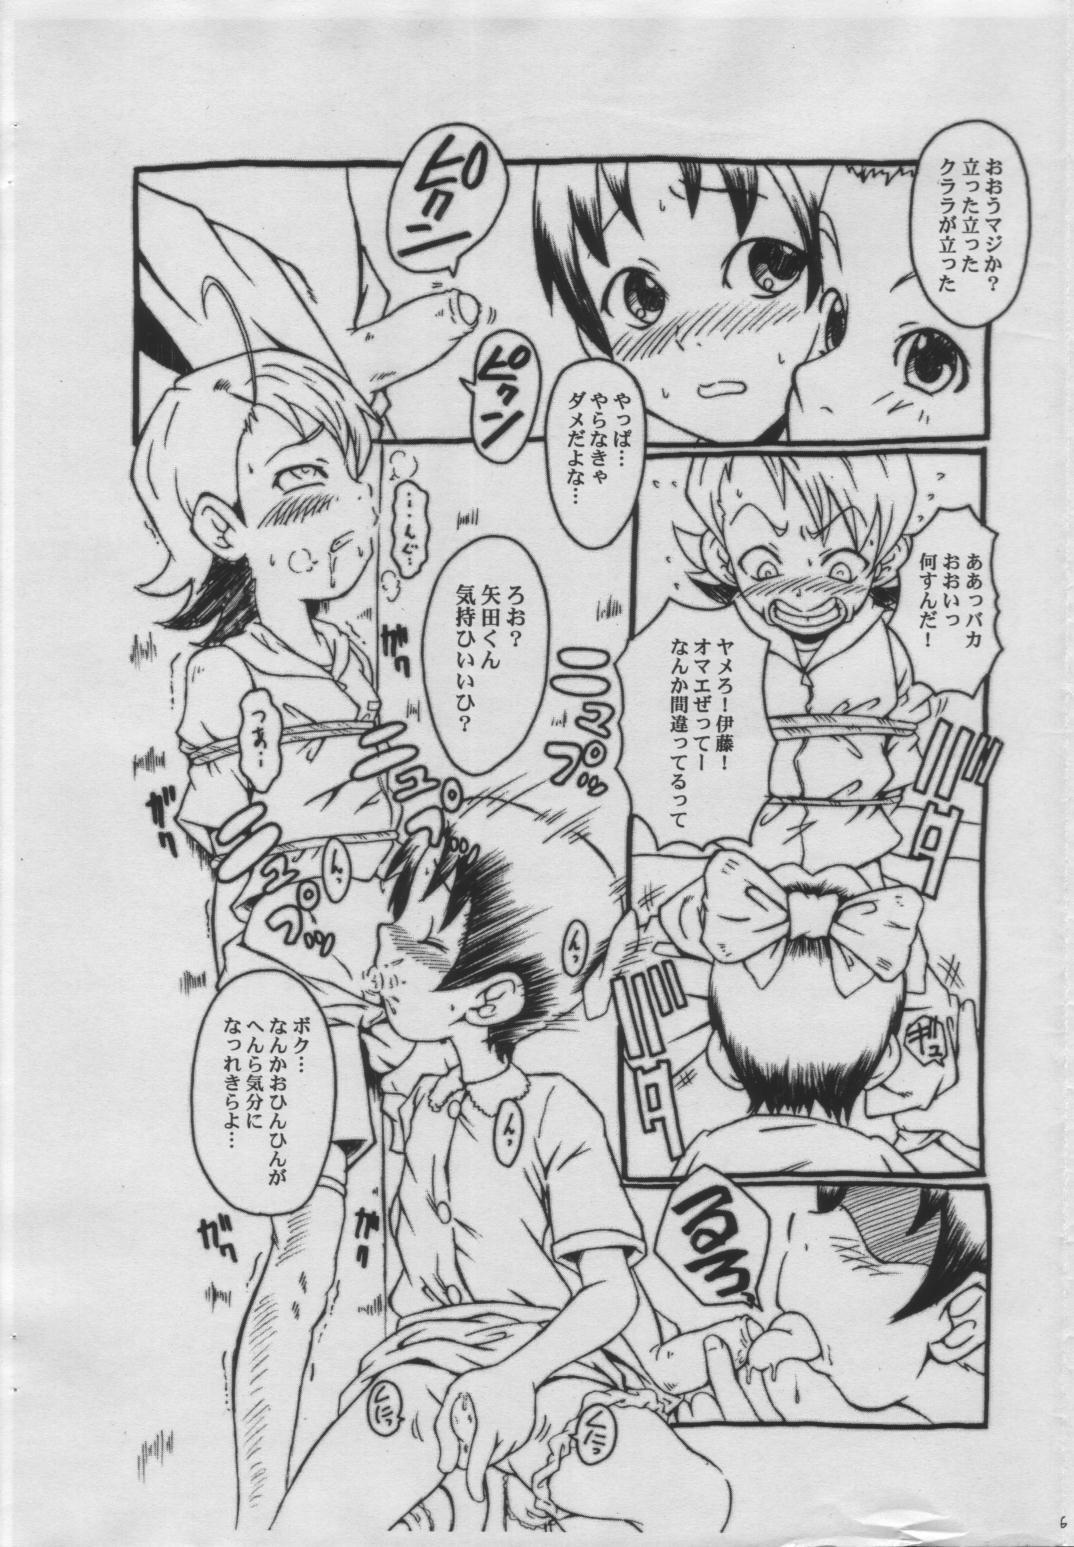 Chaturbate WALZ Jiikokyun Tenraku URABAMBI Shota Collection 5-gou - Ojamajo doremi Cream - Page 5